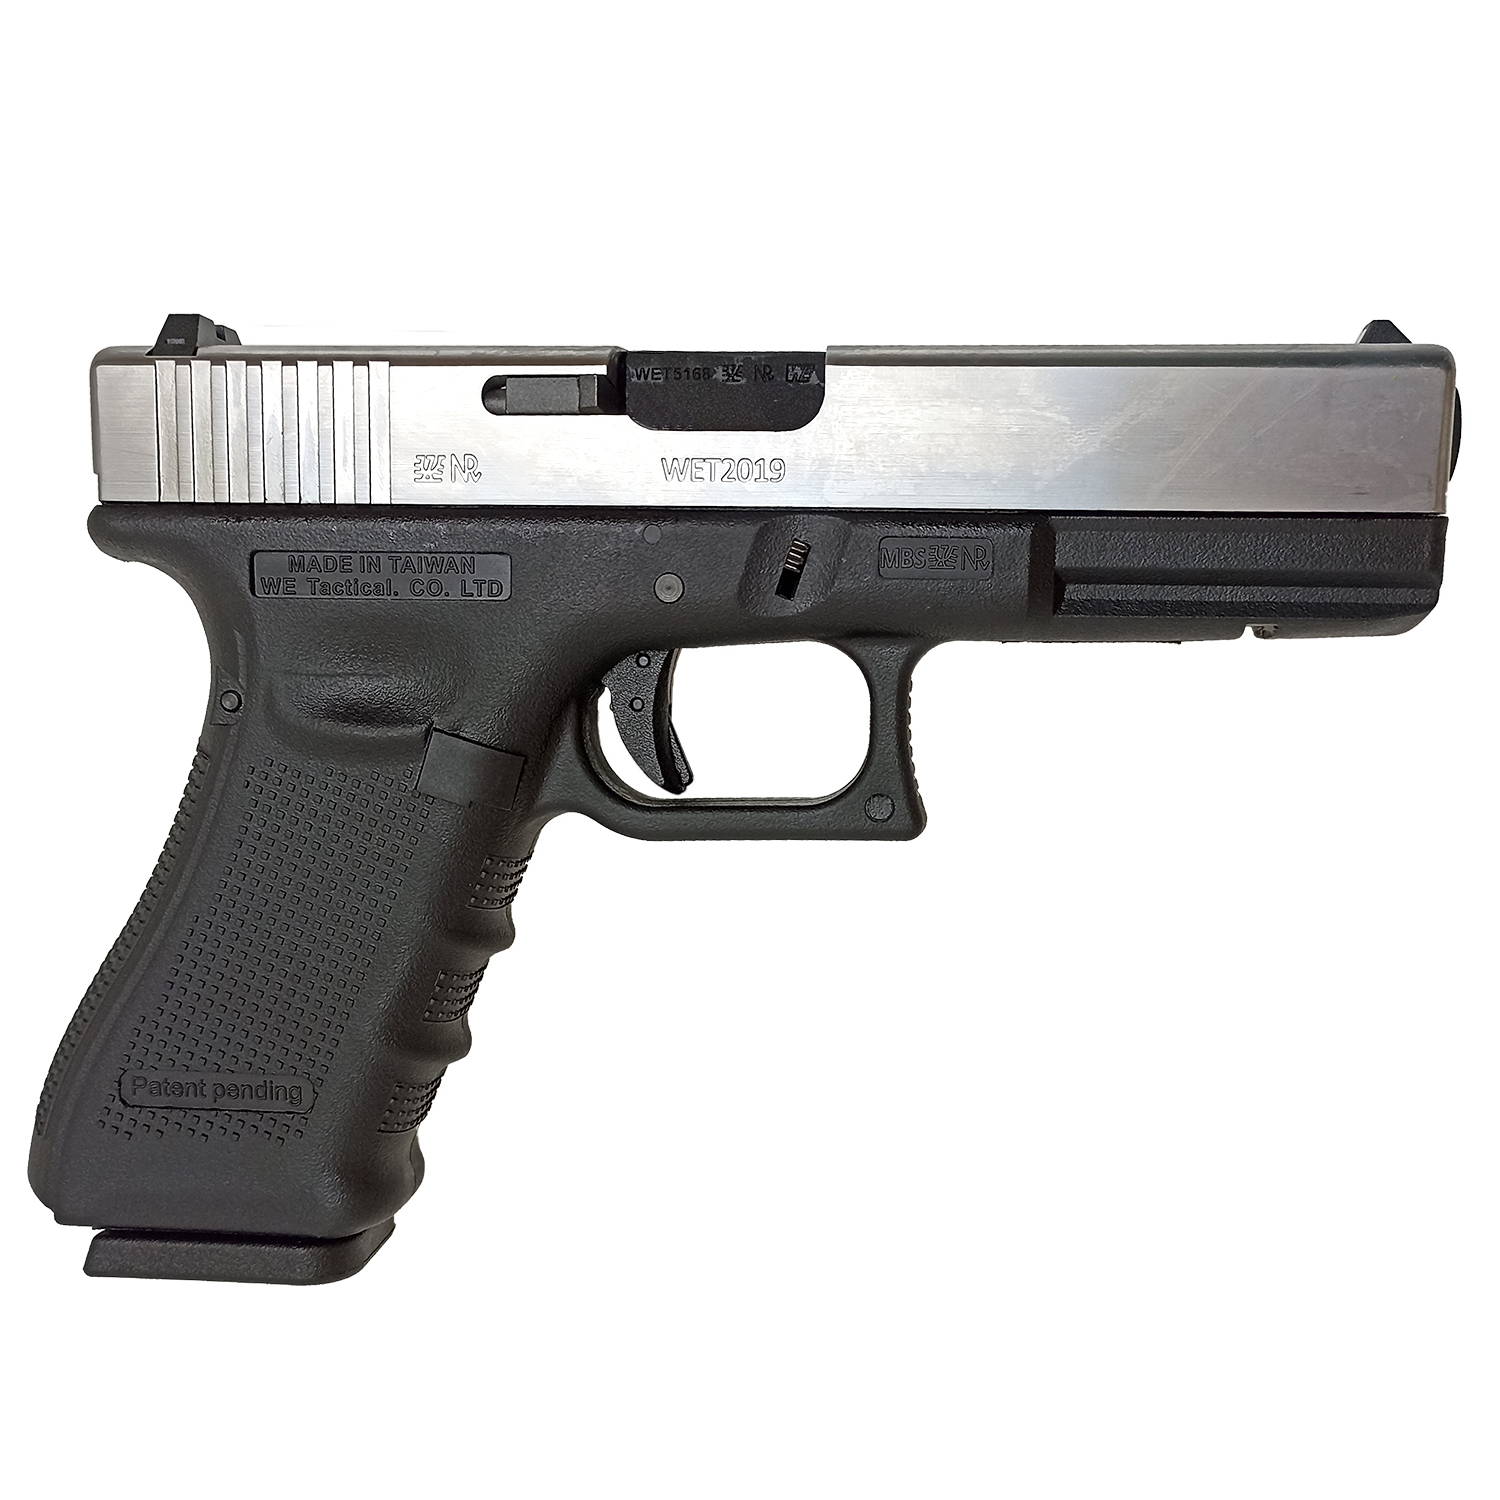 Пистолет страйкбольный (WE) Glock-17 gen4, металл слайд, хром, сменные накладки, WE-G001B-SV